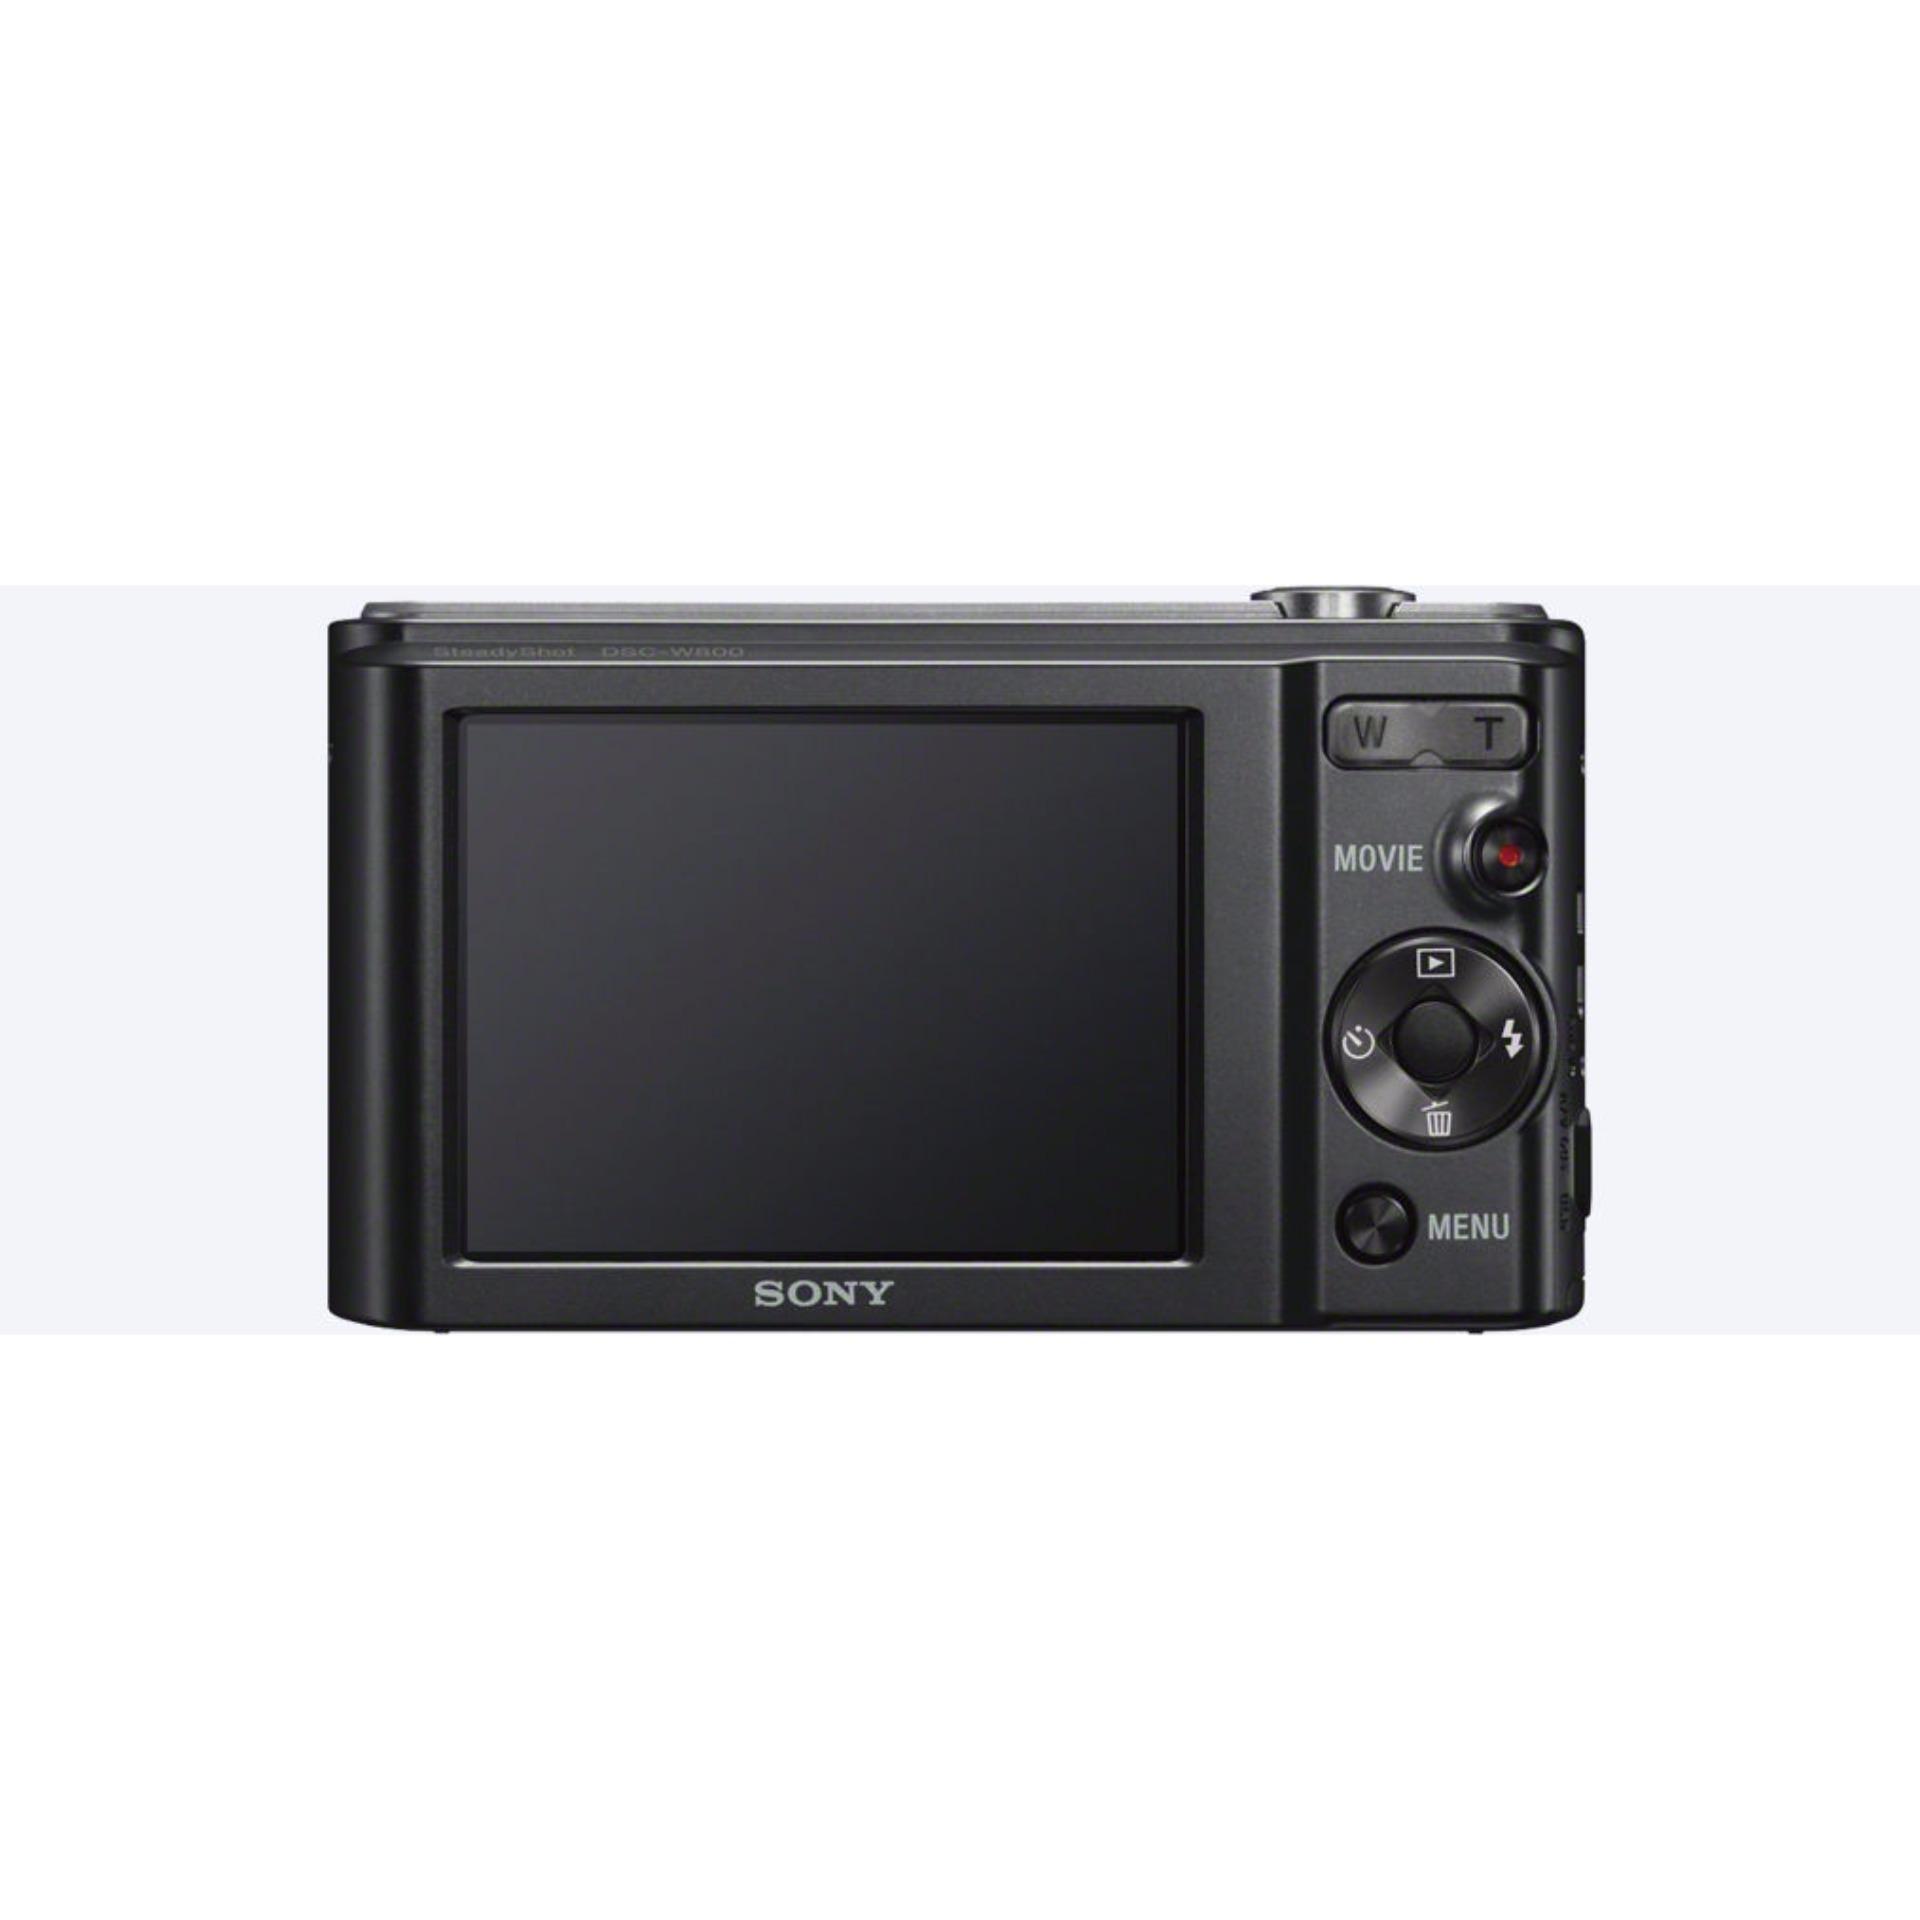 Sony Cybershot DSC-W800 Digital Camera. DSCW800 W800